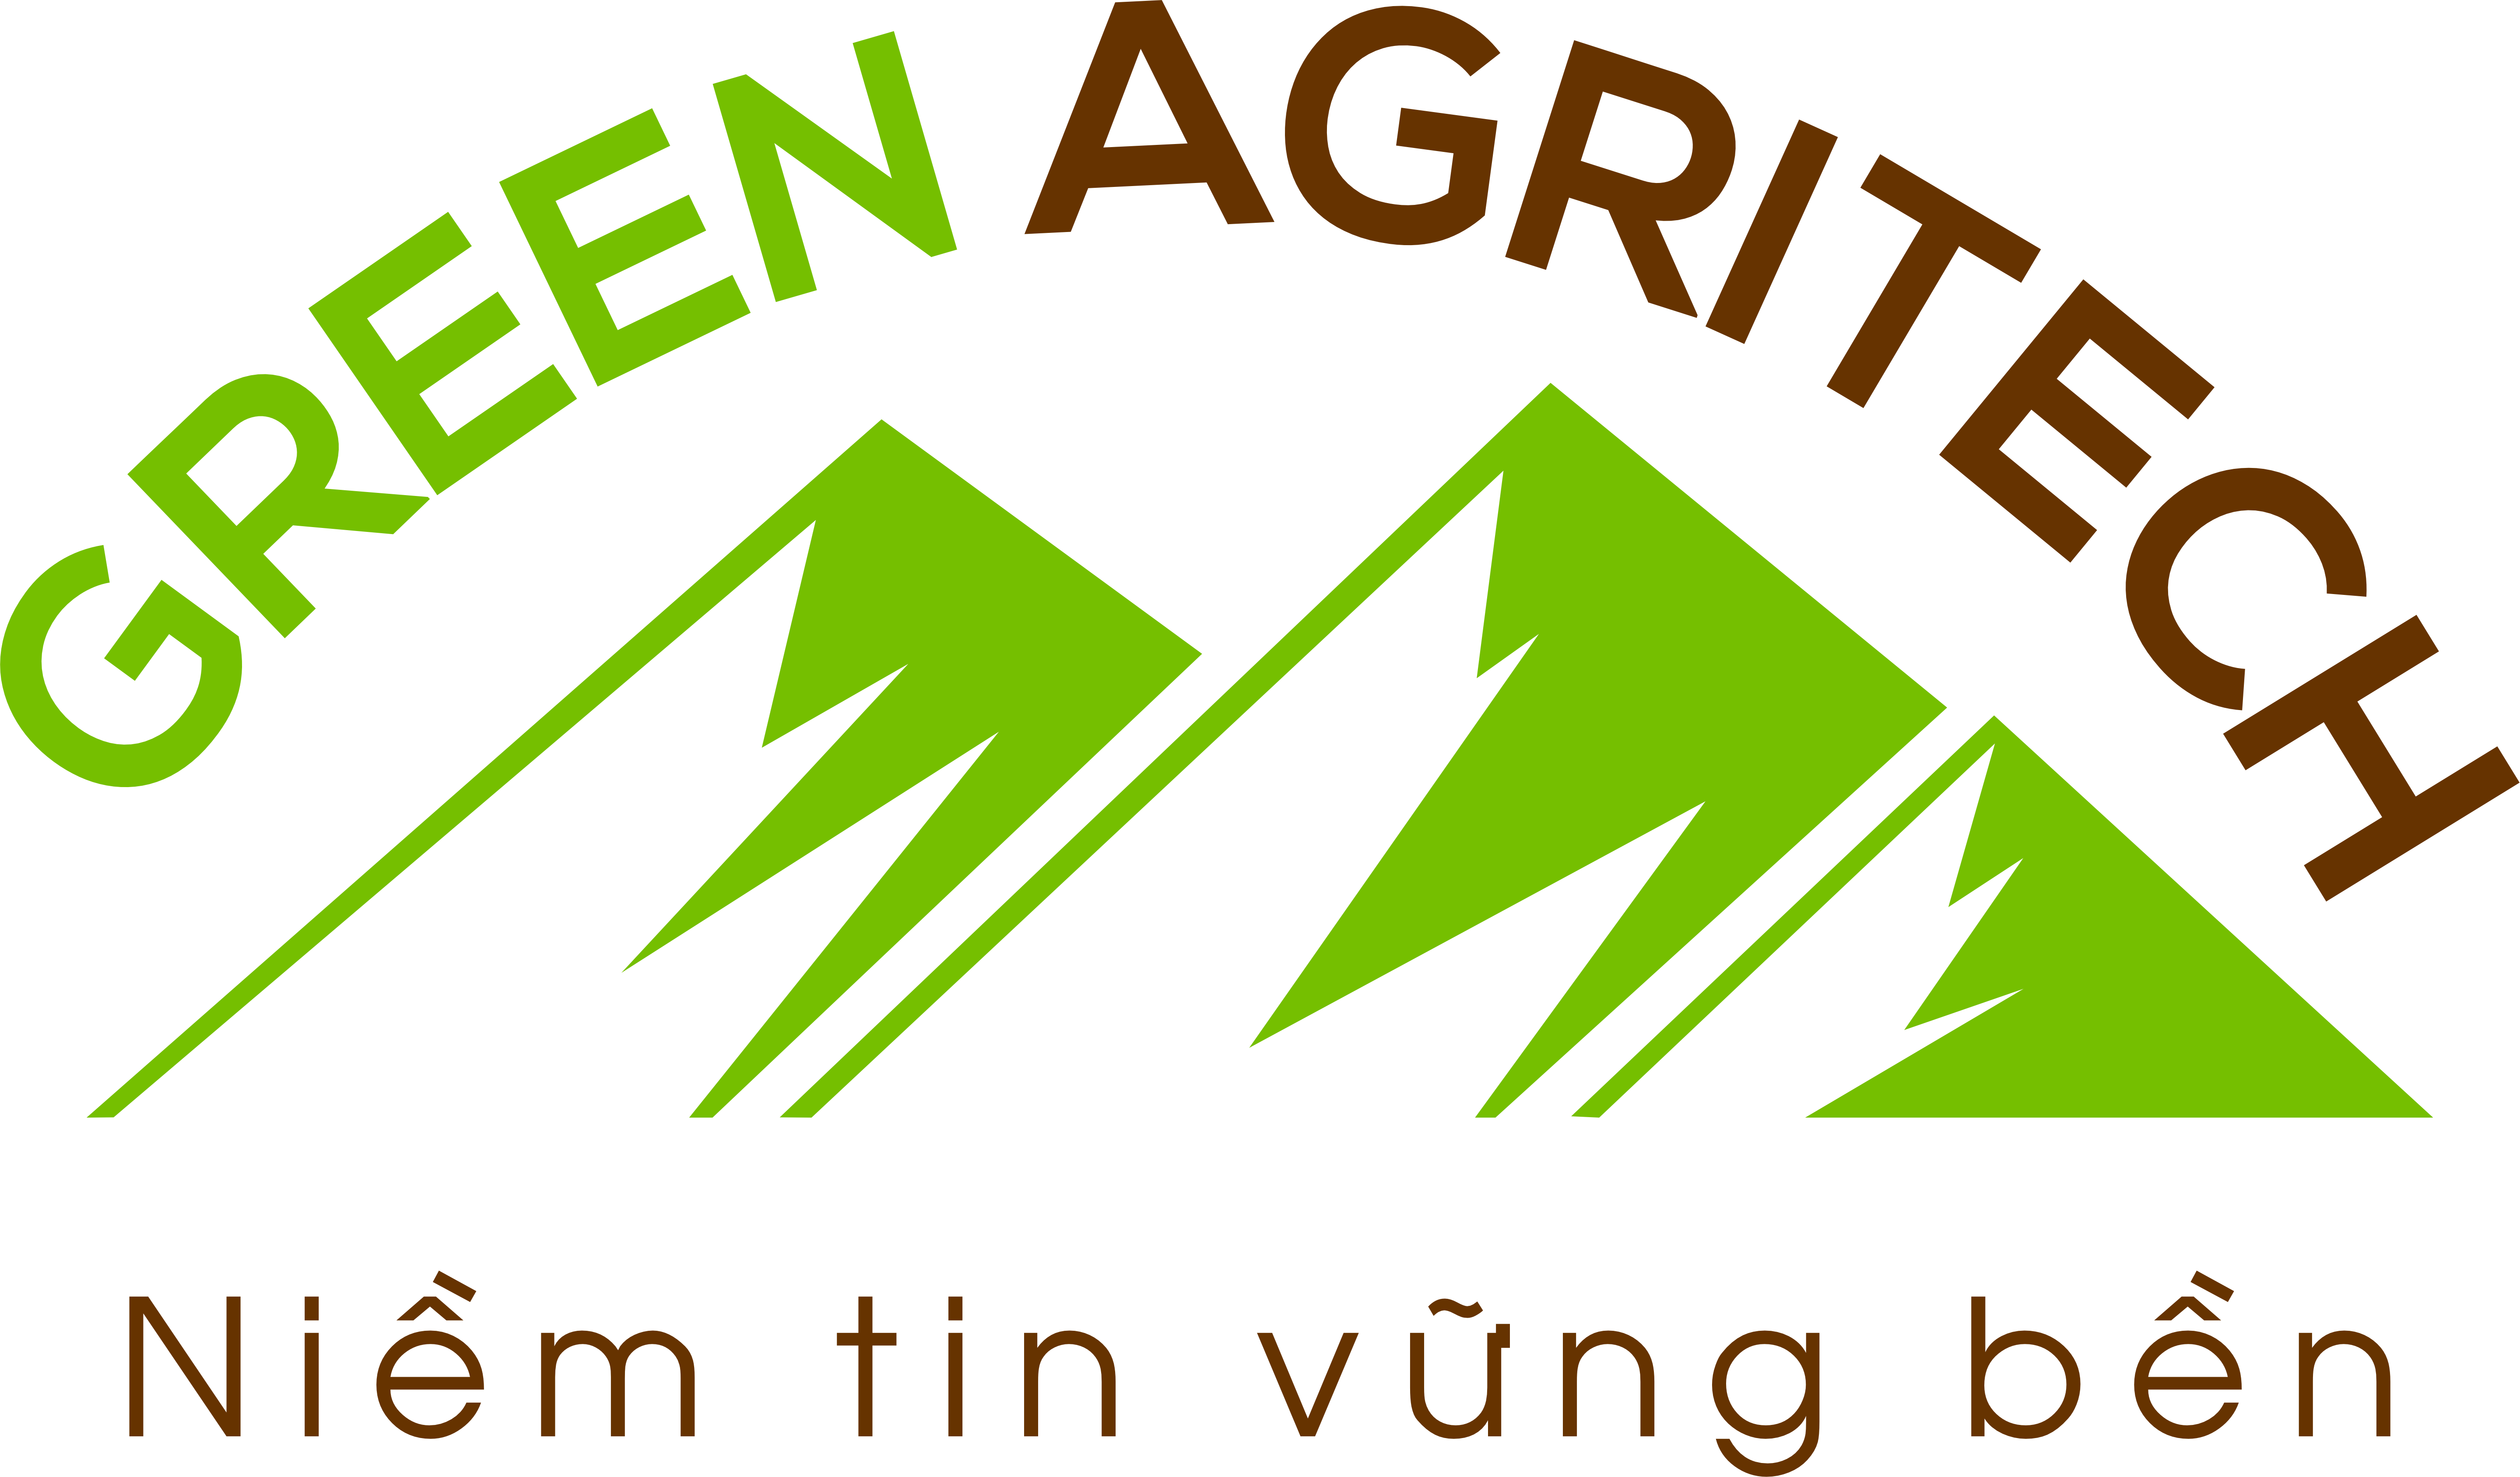 Green Agritech